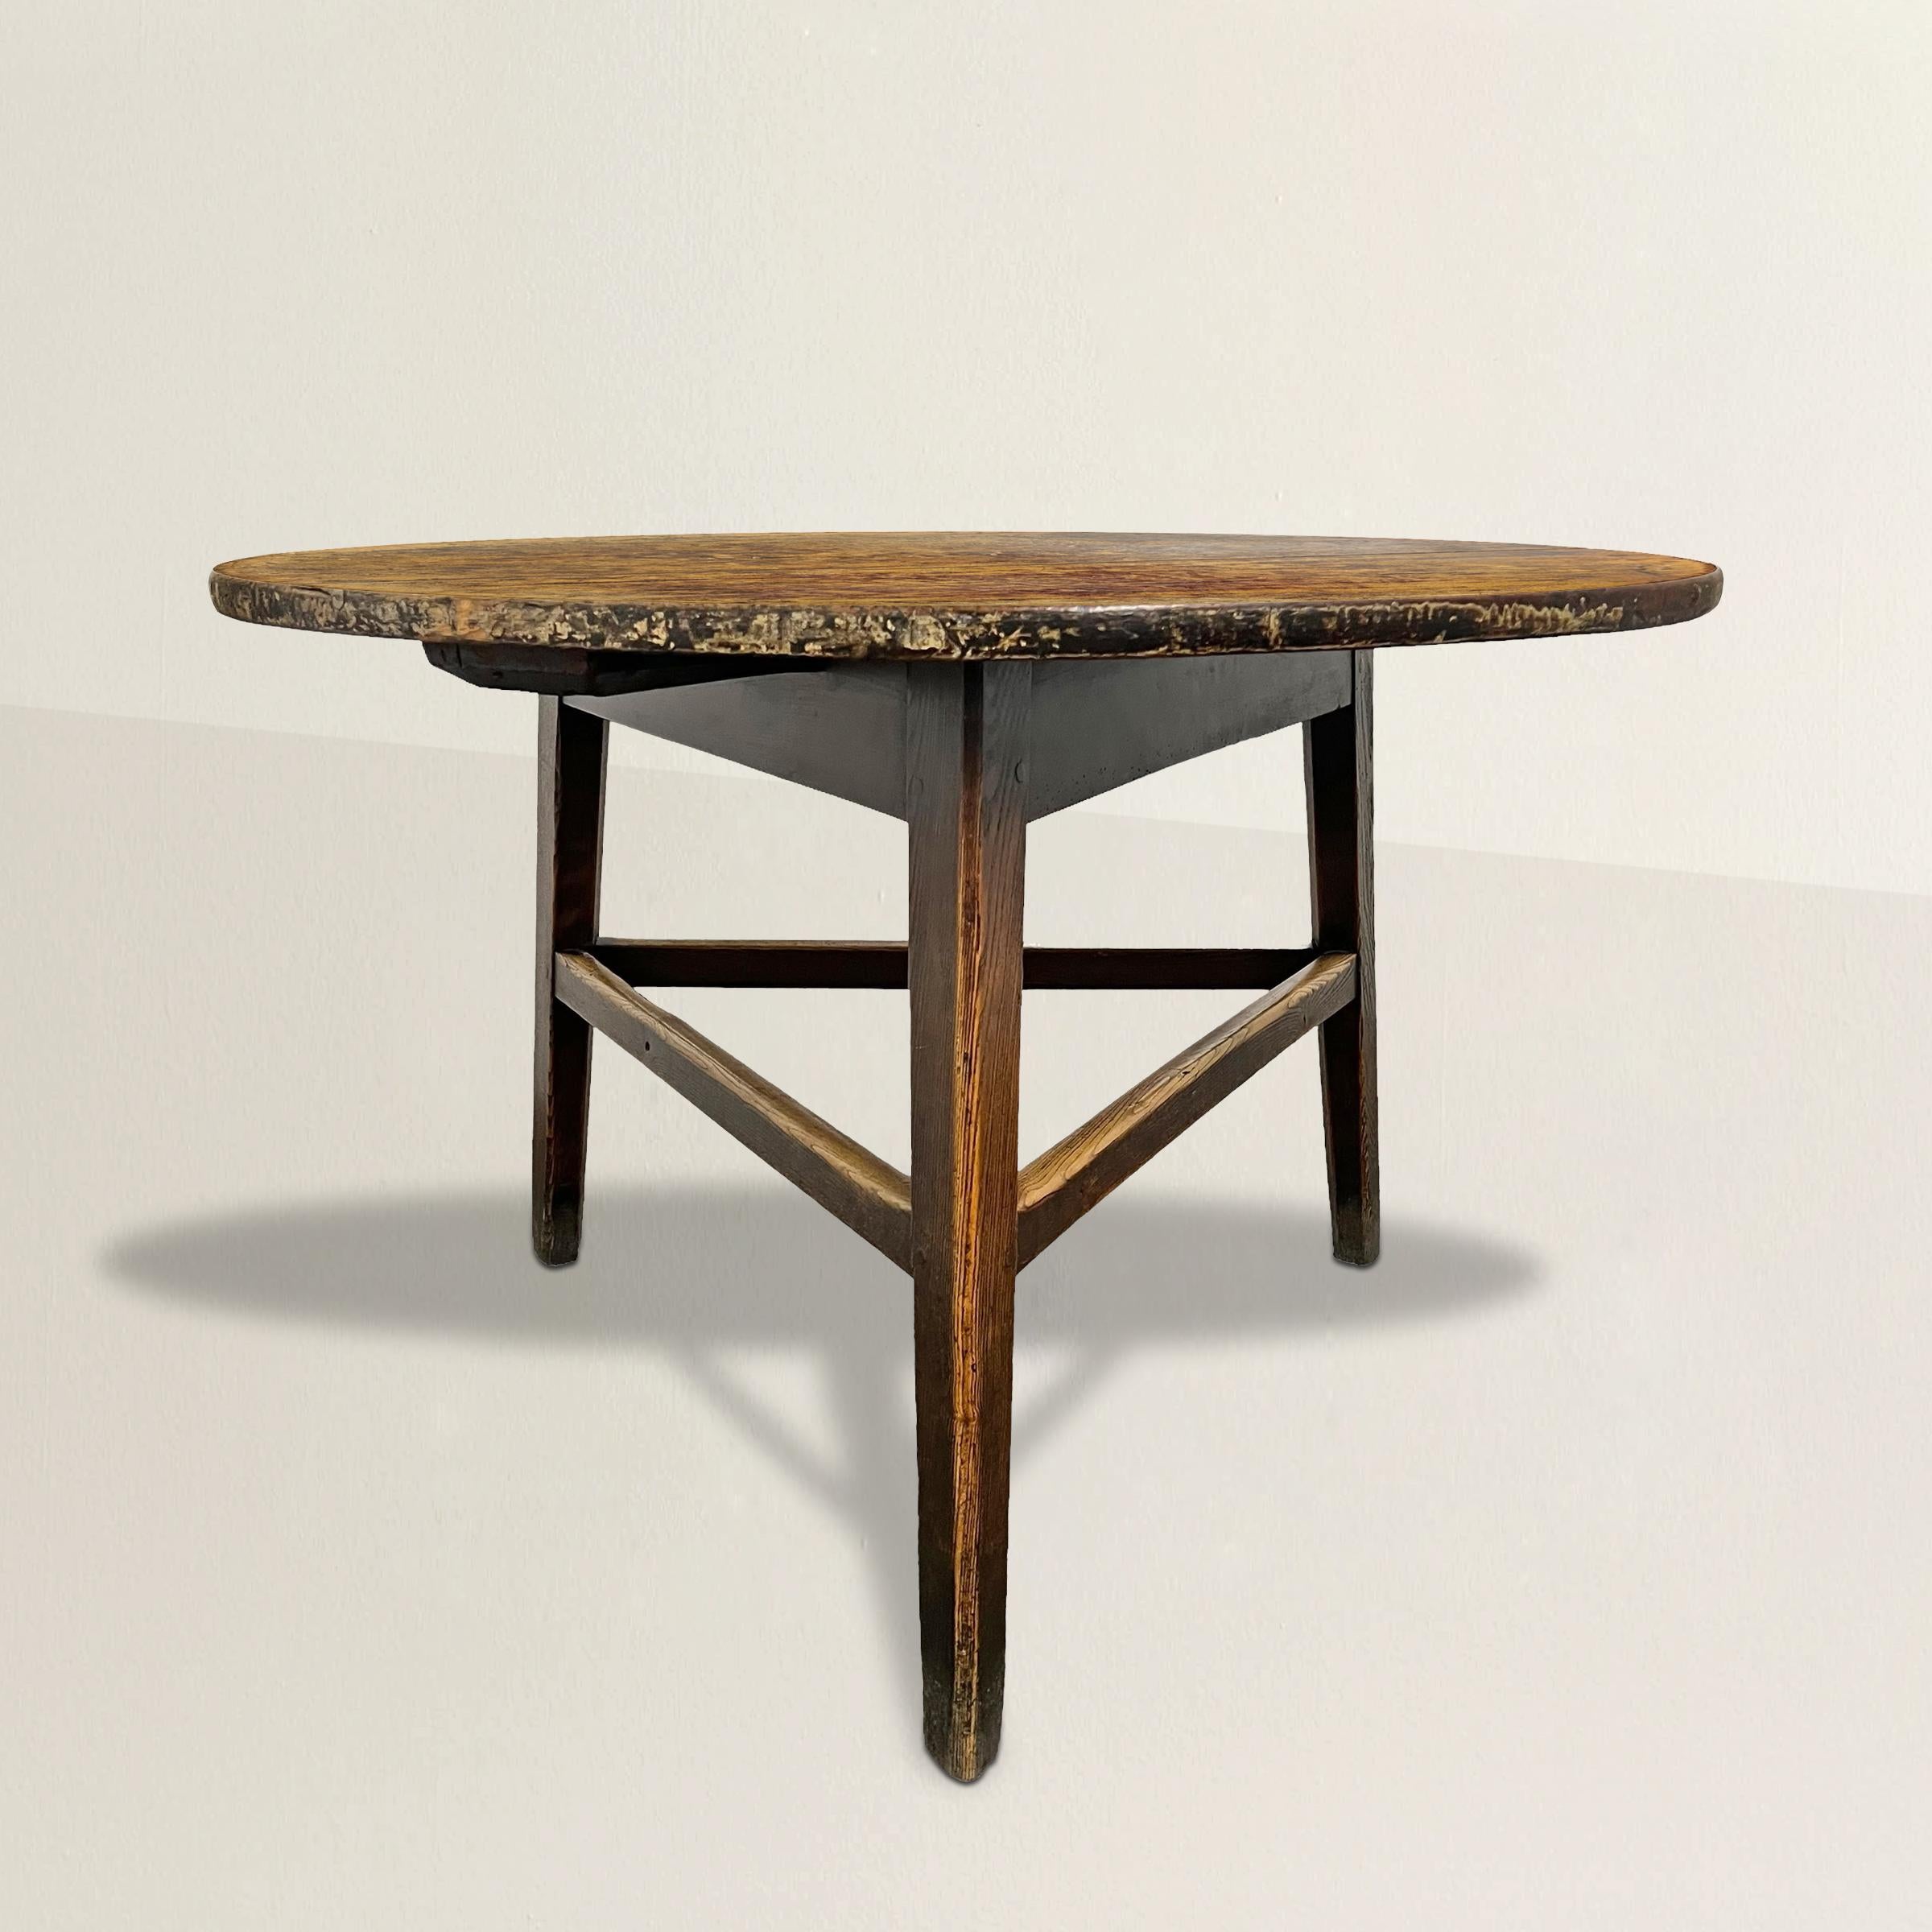 Témoignage de l'artisanat anglais du XIXe siècle, cette table de cricket aux dimensions exceptionnelles est un meuble captivant. Son plateau rond présente une patine qui témoigne des années passées. Soutenu par trois pieds élégamment fuselés, reliés